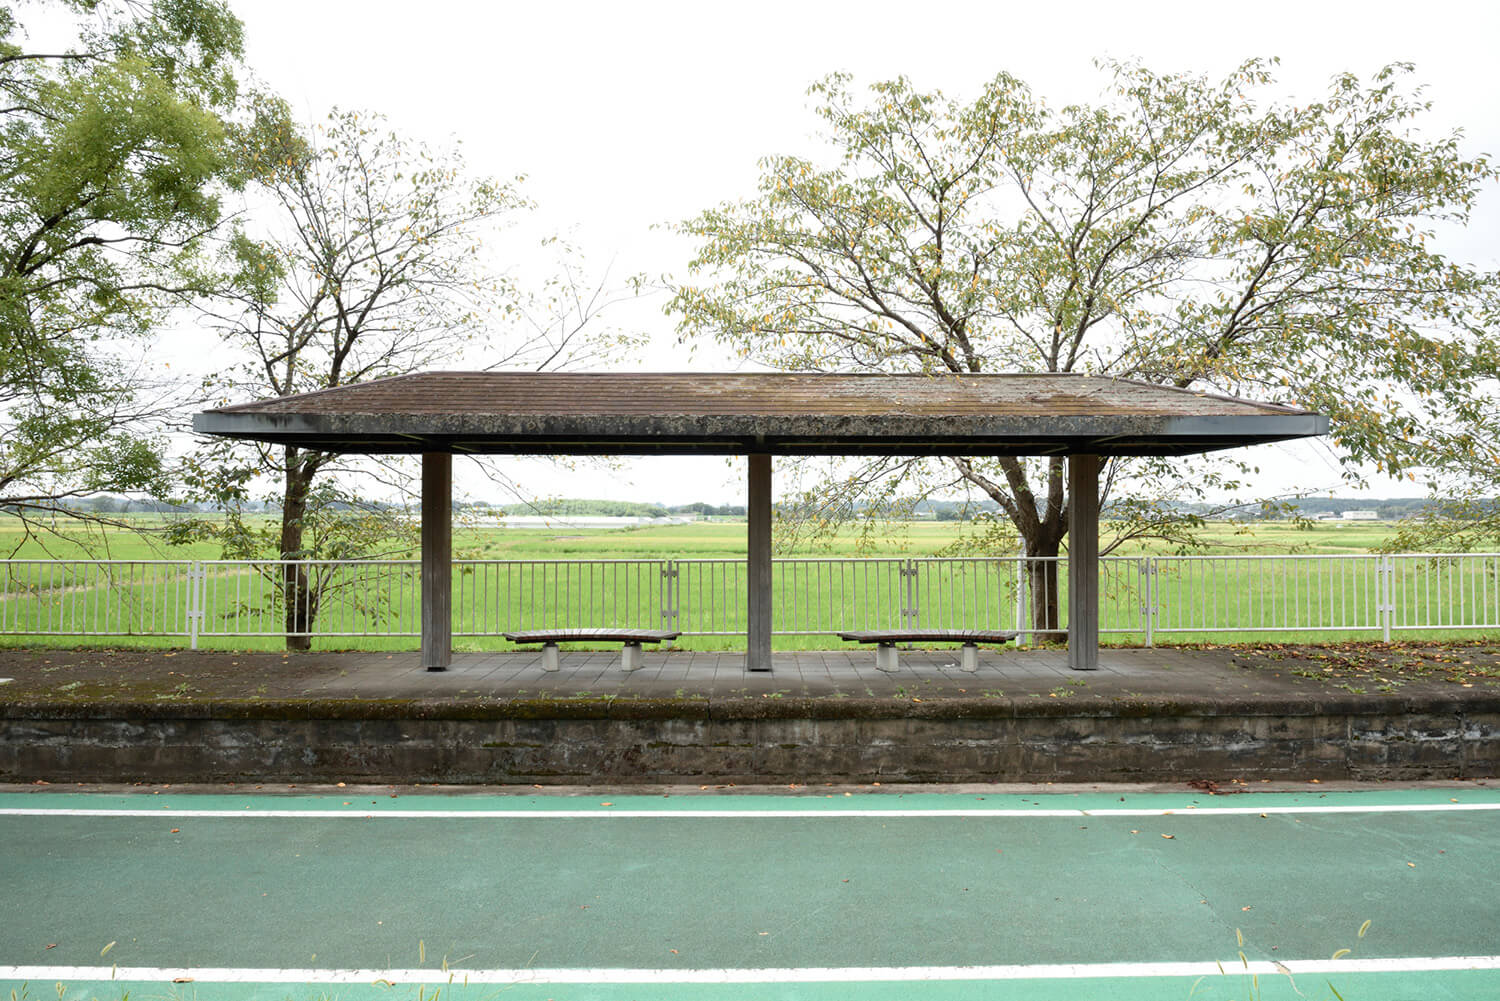 さびれた駅舎が残る藤沢休憩所。田んぼに囲まれ、日本の原風景に出合える